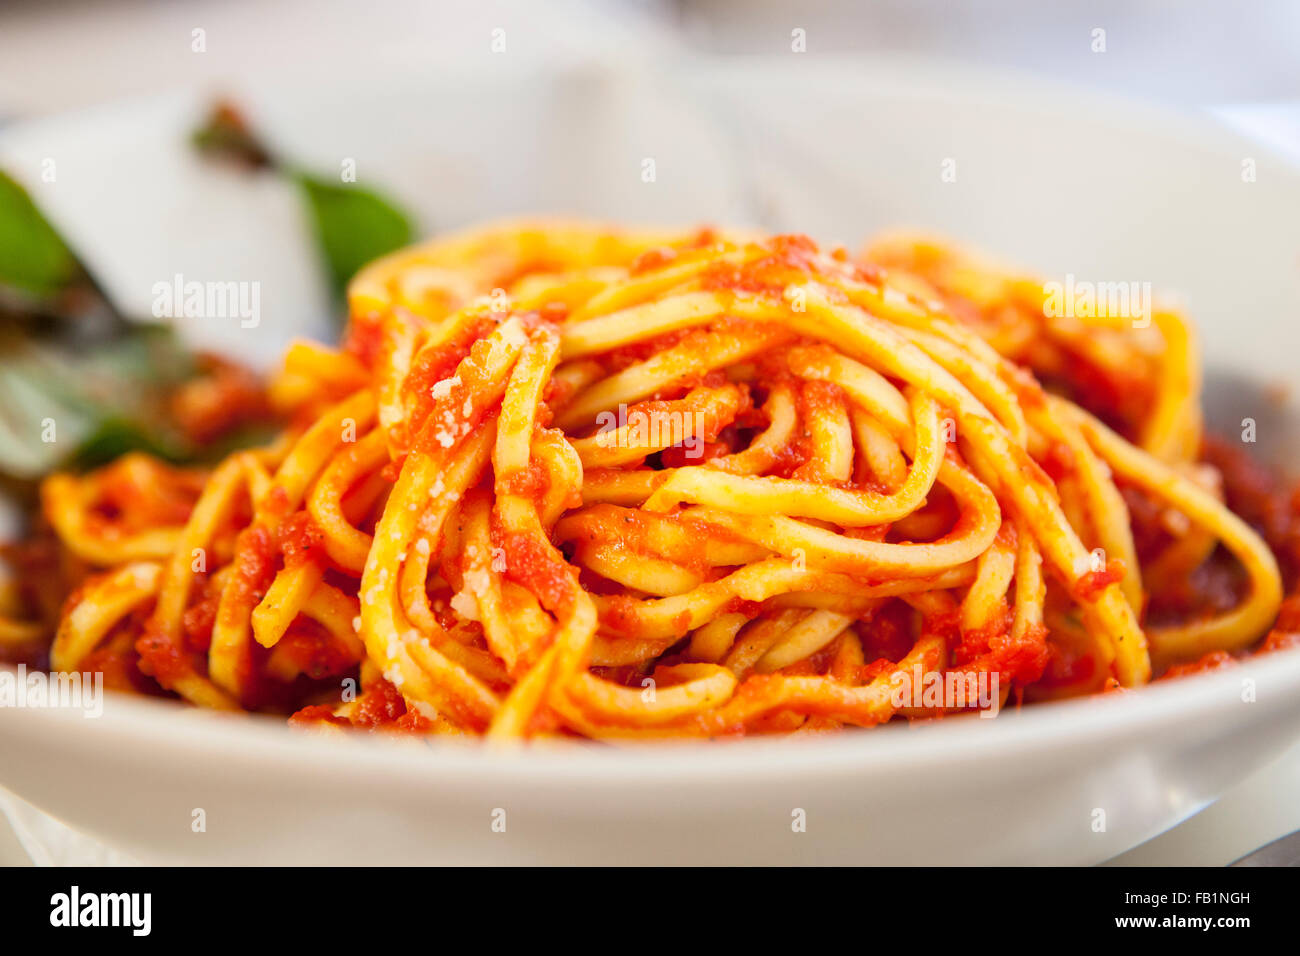 Piatto di spaghetti alla bolognese con basilico guarnire. Closeup shot con il fuoco selettivo Foto Stock